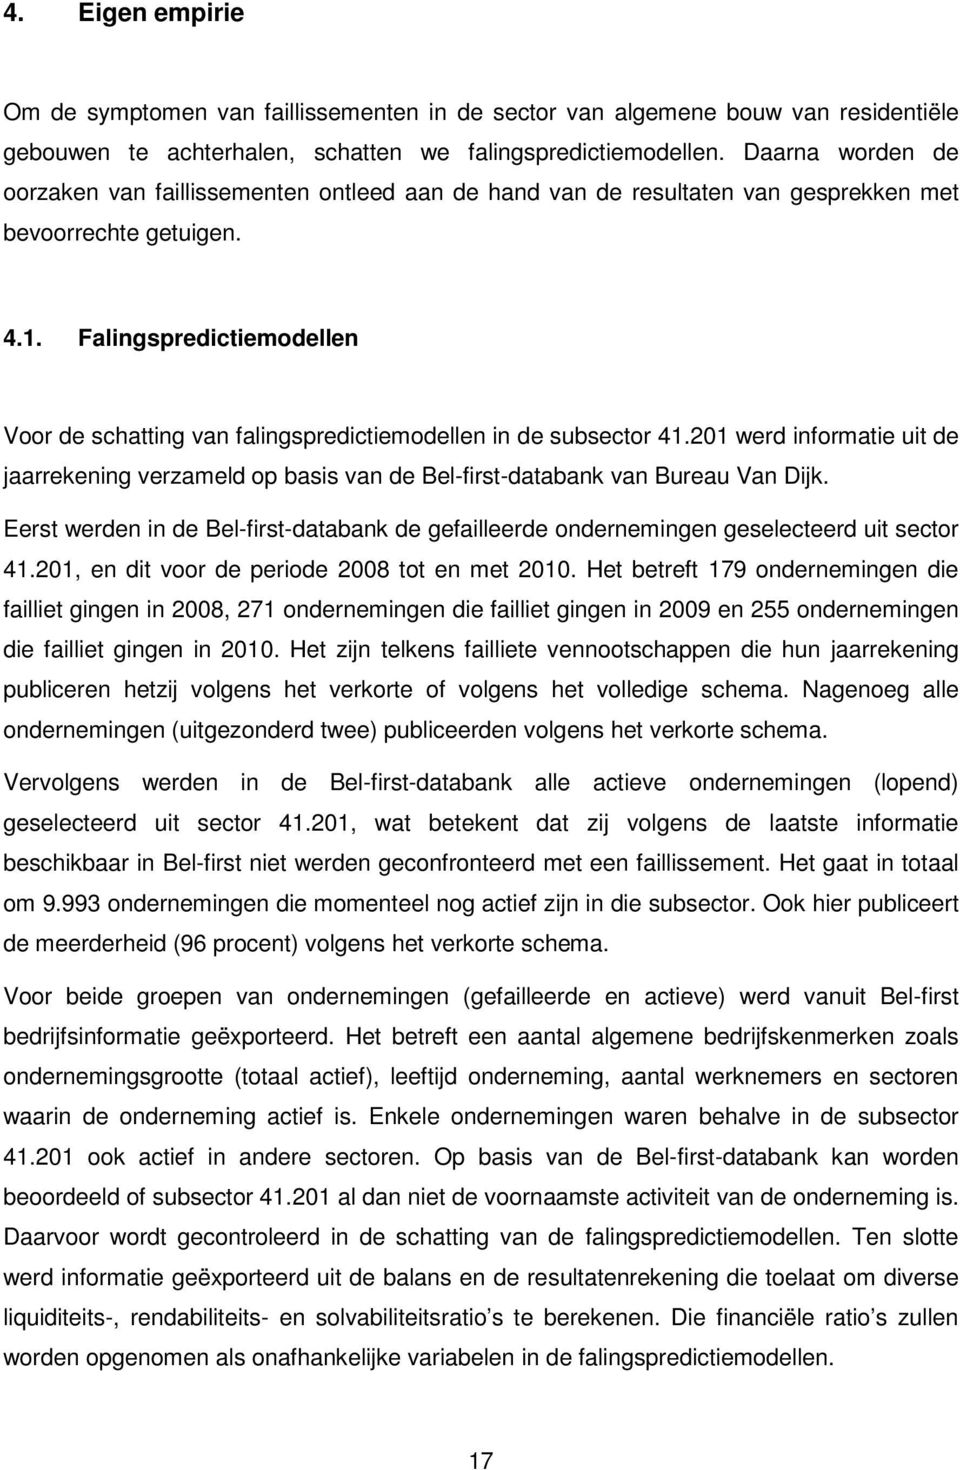 Falingspredictiemodellen Voor de schatting van falingspredictiemodellen in de subsector 41.201 werd informatie uit de jaarrekening verzameld op basis van de Bel-first-databank van Bureau Van Dijk.